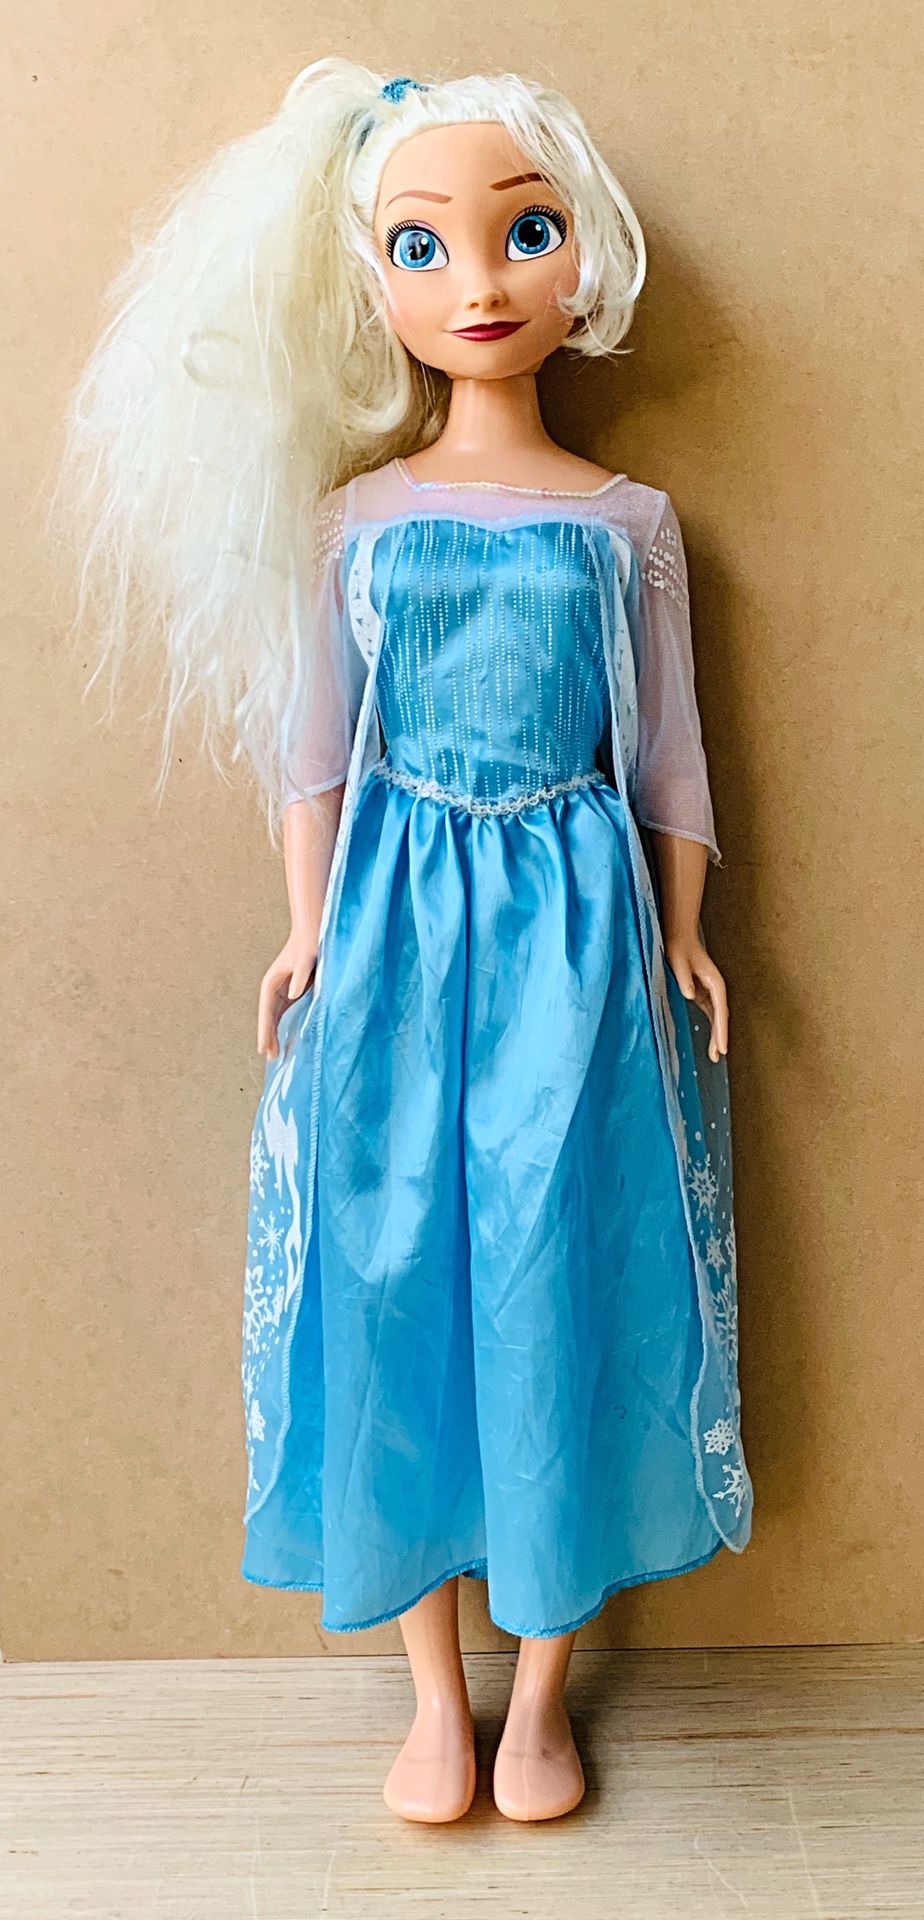 Disney Elsa Doll - My Size 3 Feet Tall